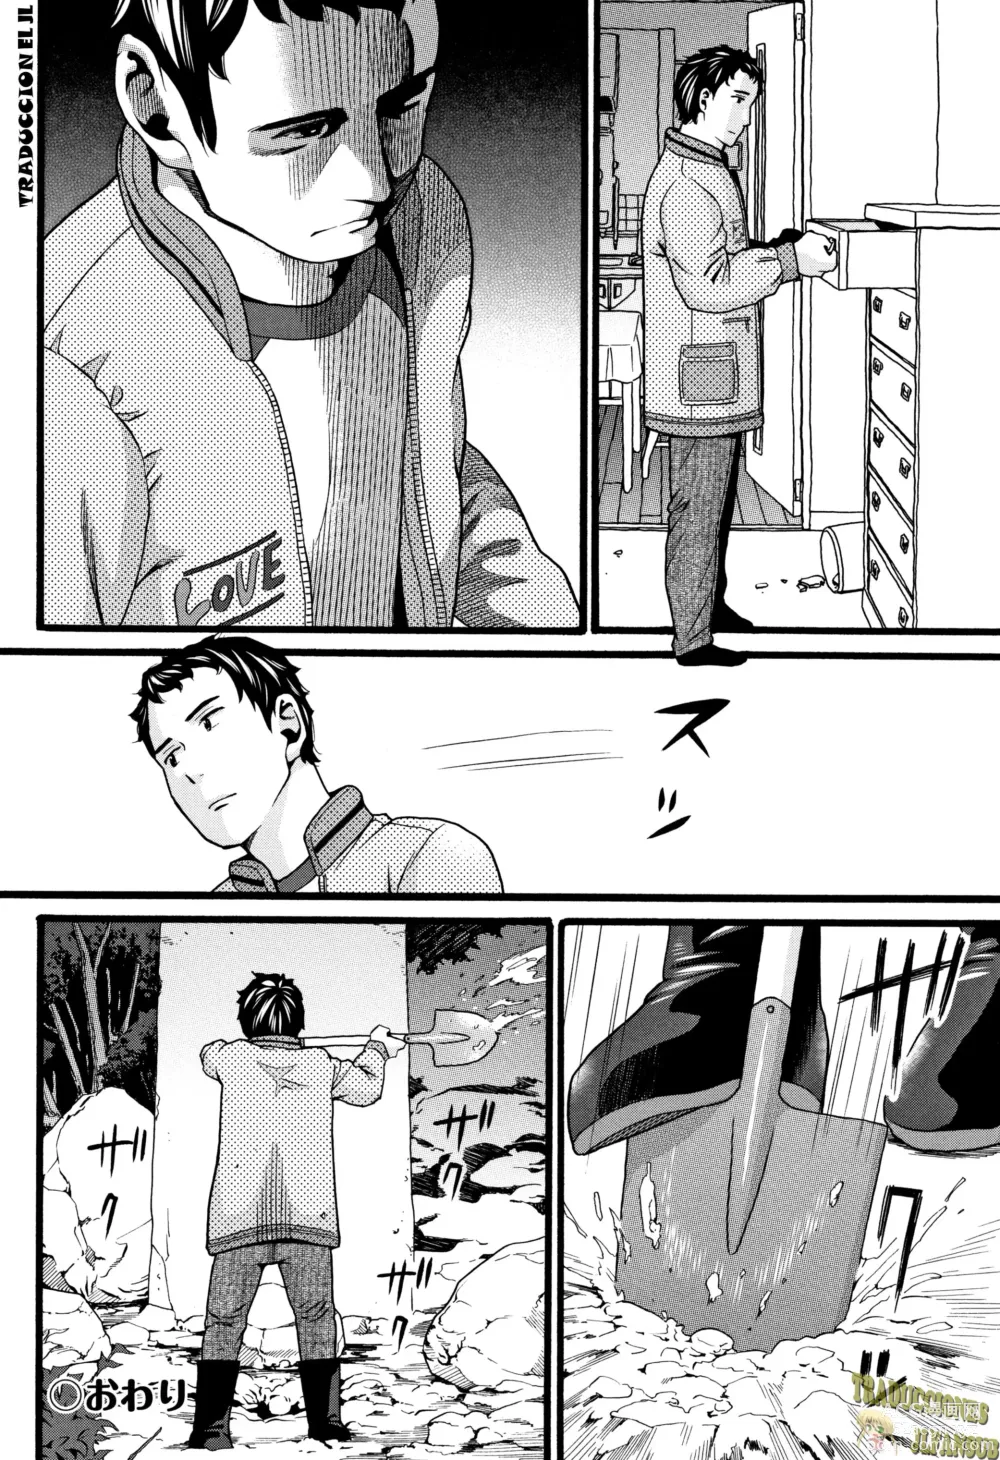 Page 54 of manga JS Ch. 1-2